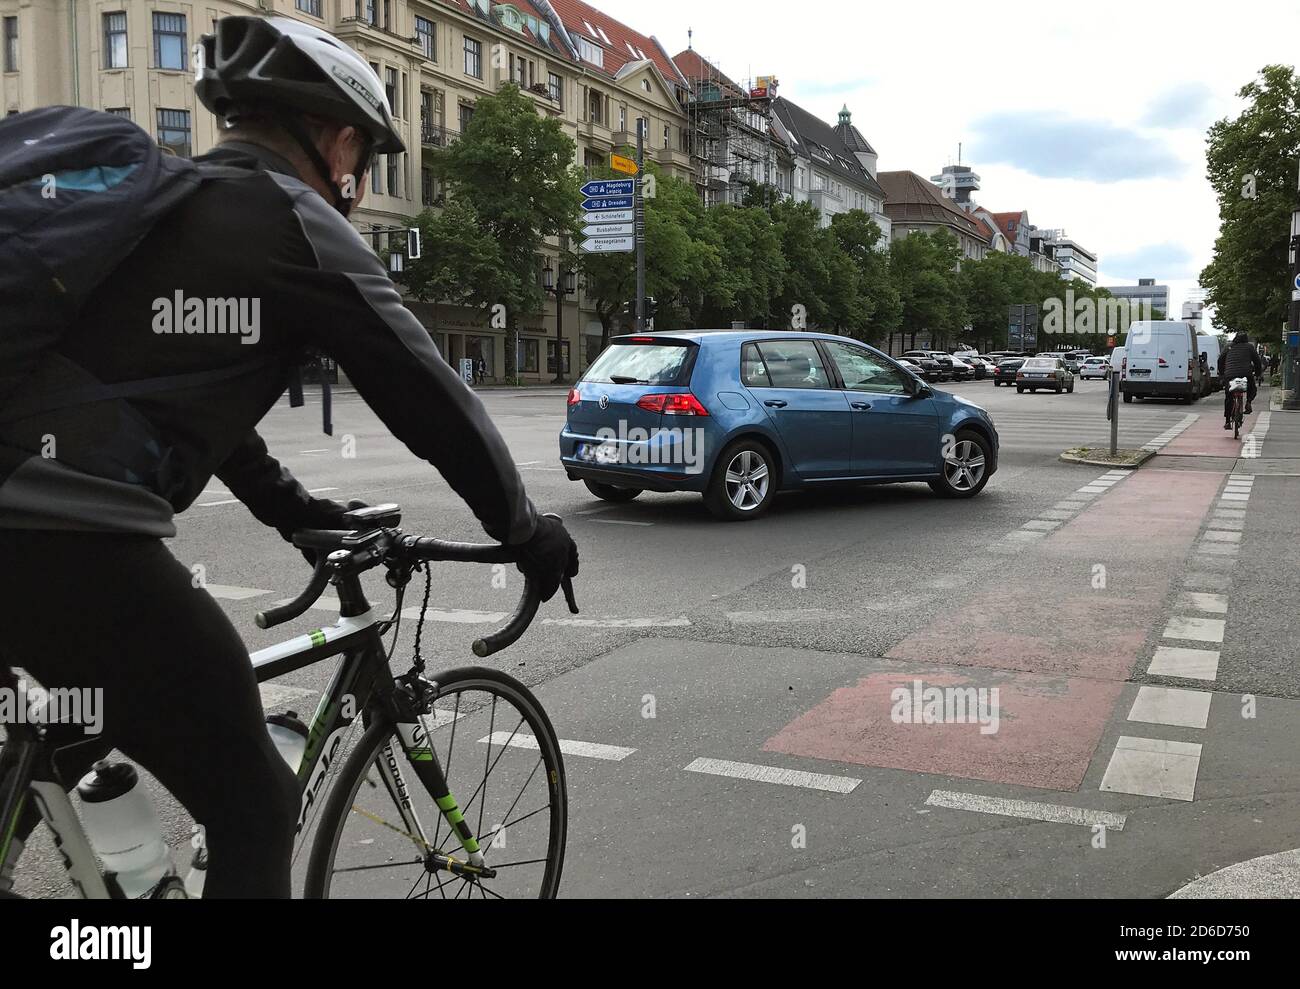 13.05.2020, Berlino, , Germania - l'automobile lascia passare i ciclisti prima di girare a destra. 00S200513D345CAROEX.JPG [RELEASE DEL MODELLO: NO, RELEASE DELLA PROPRIETÀ: NO (C) CARO Foto Stock